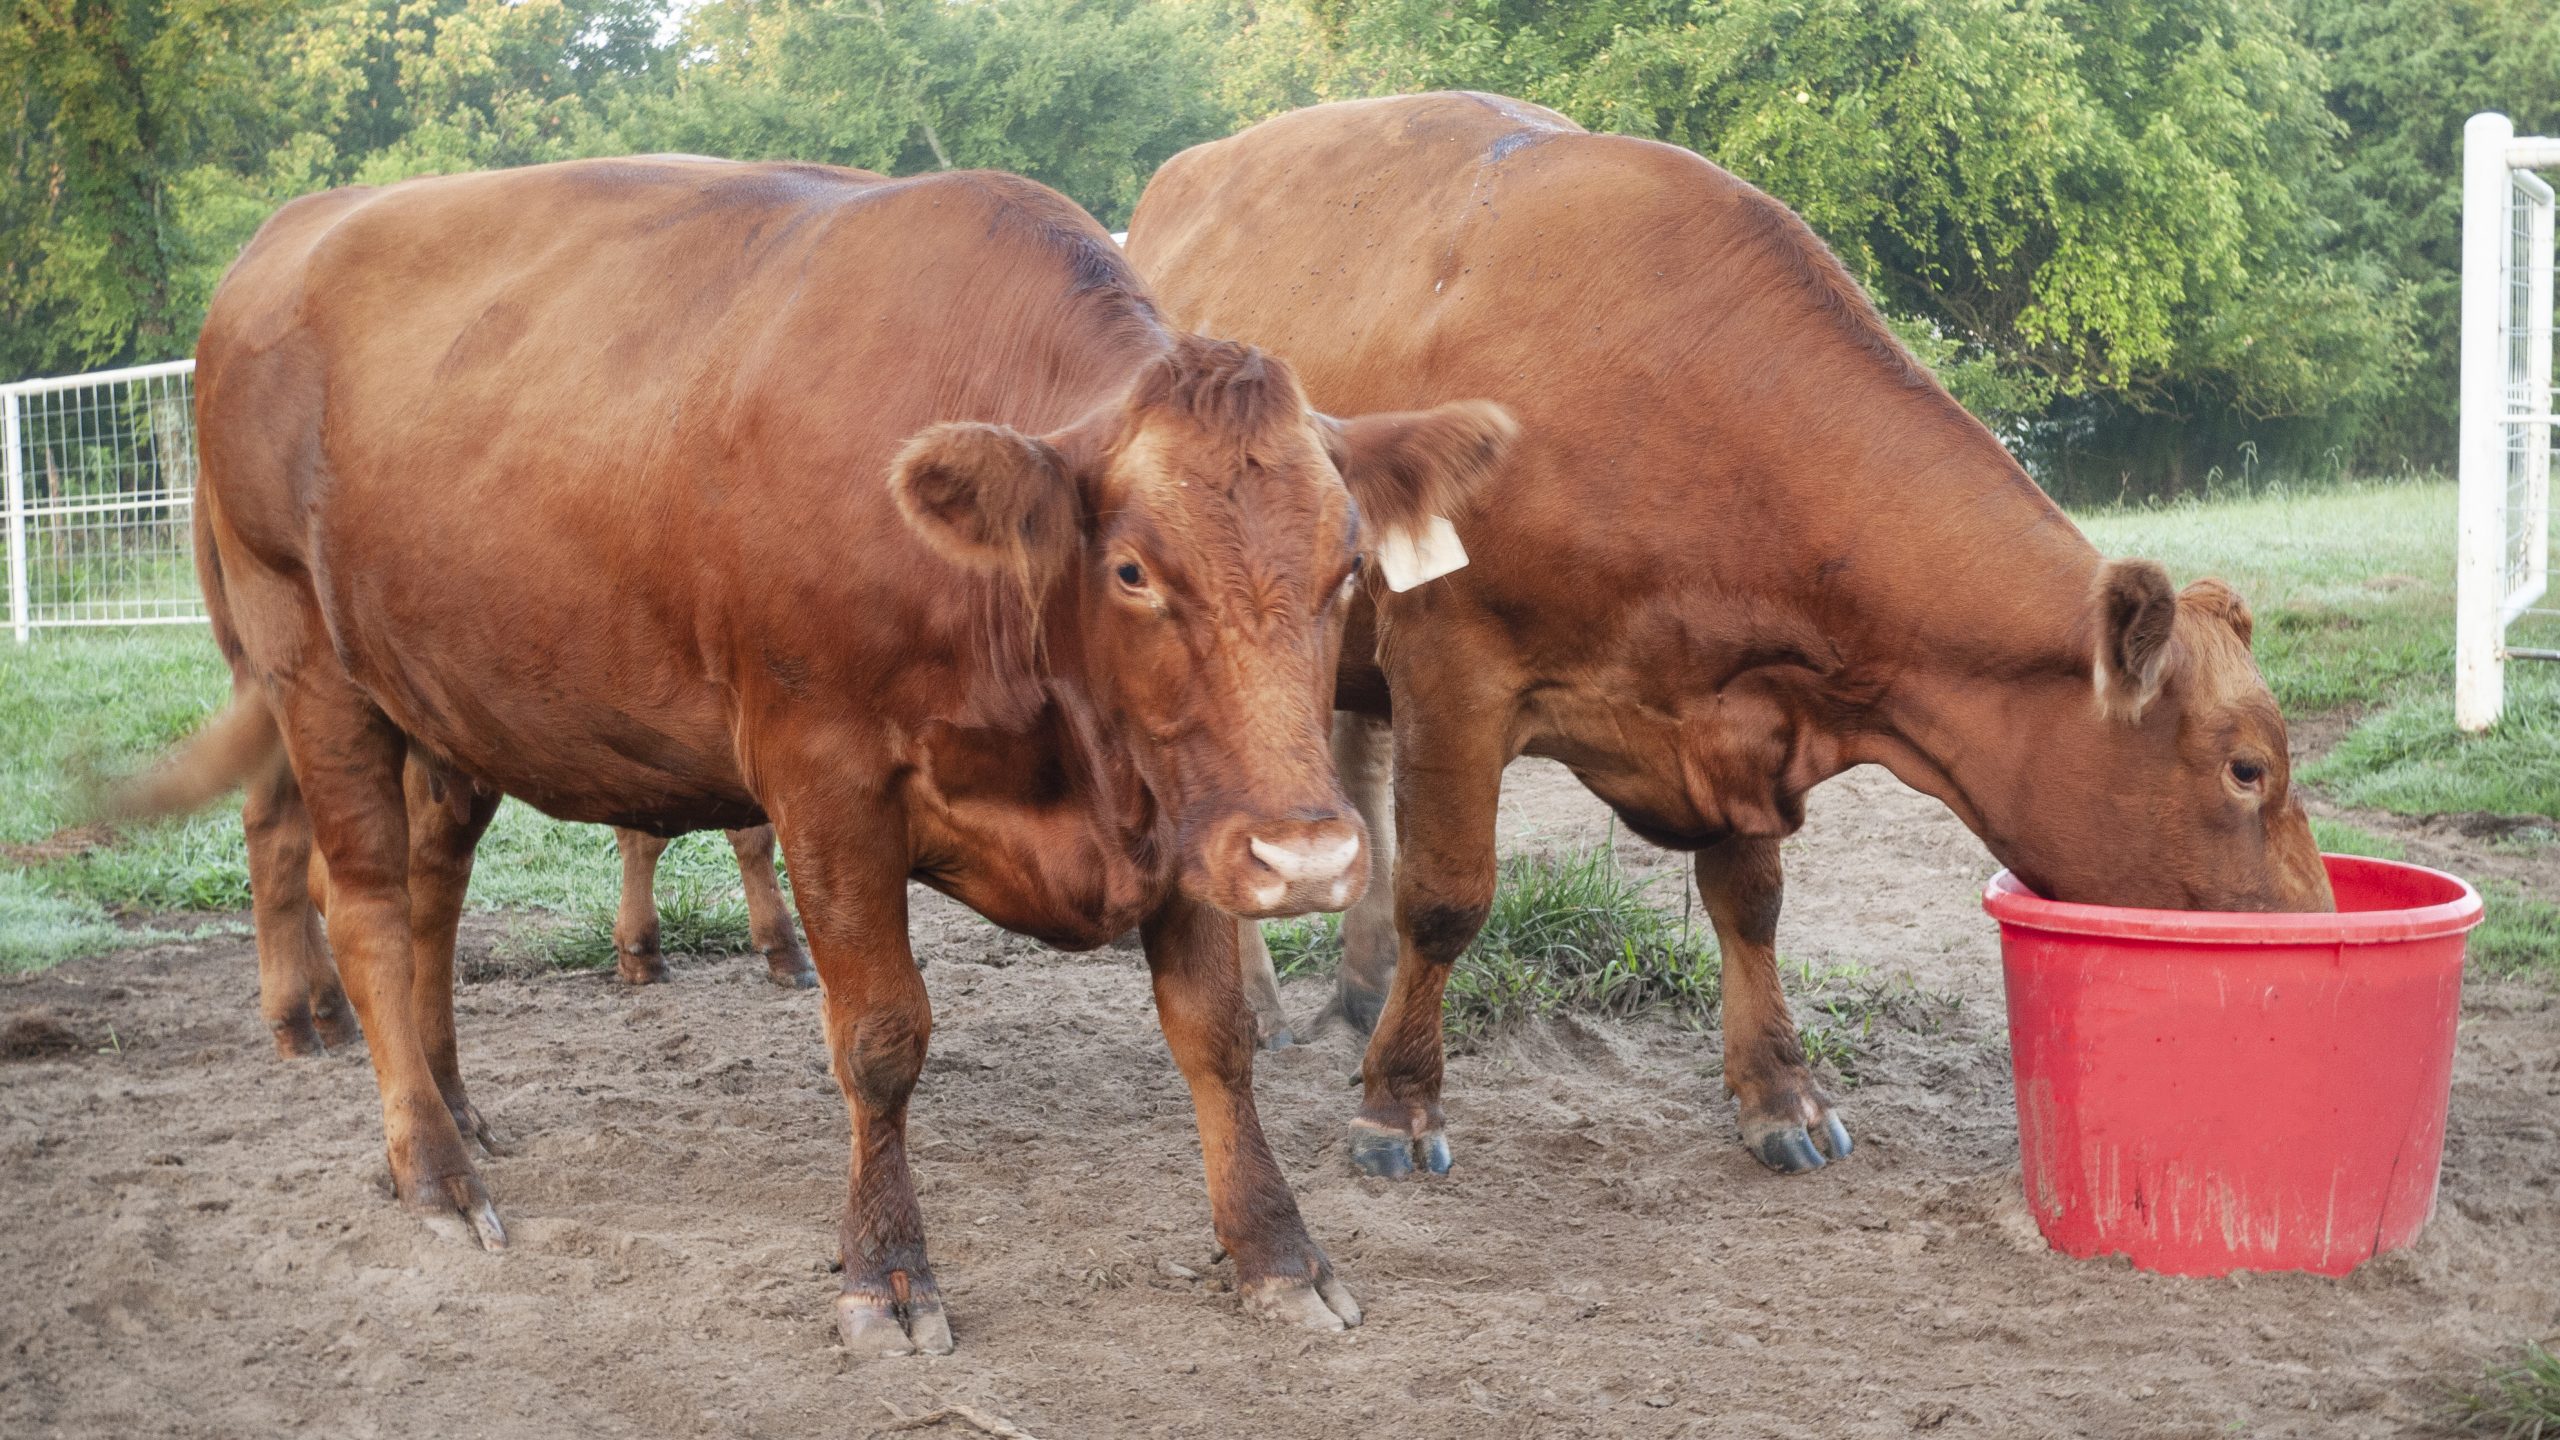 Managing lameness in beef cattle